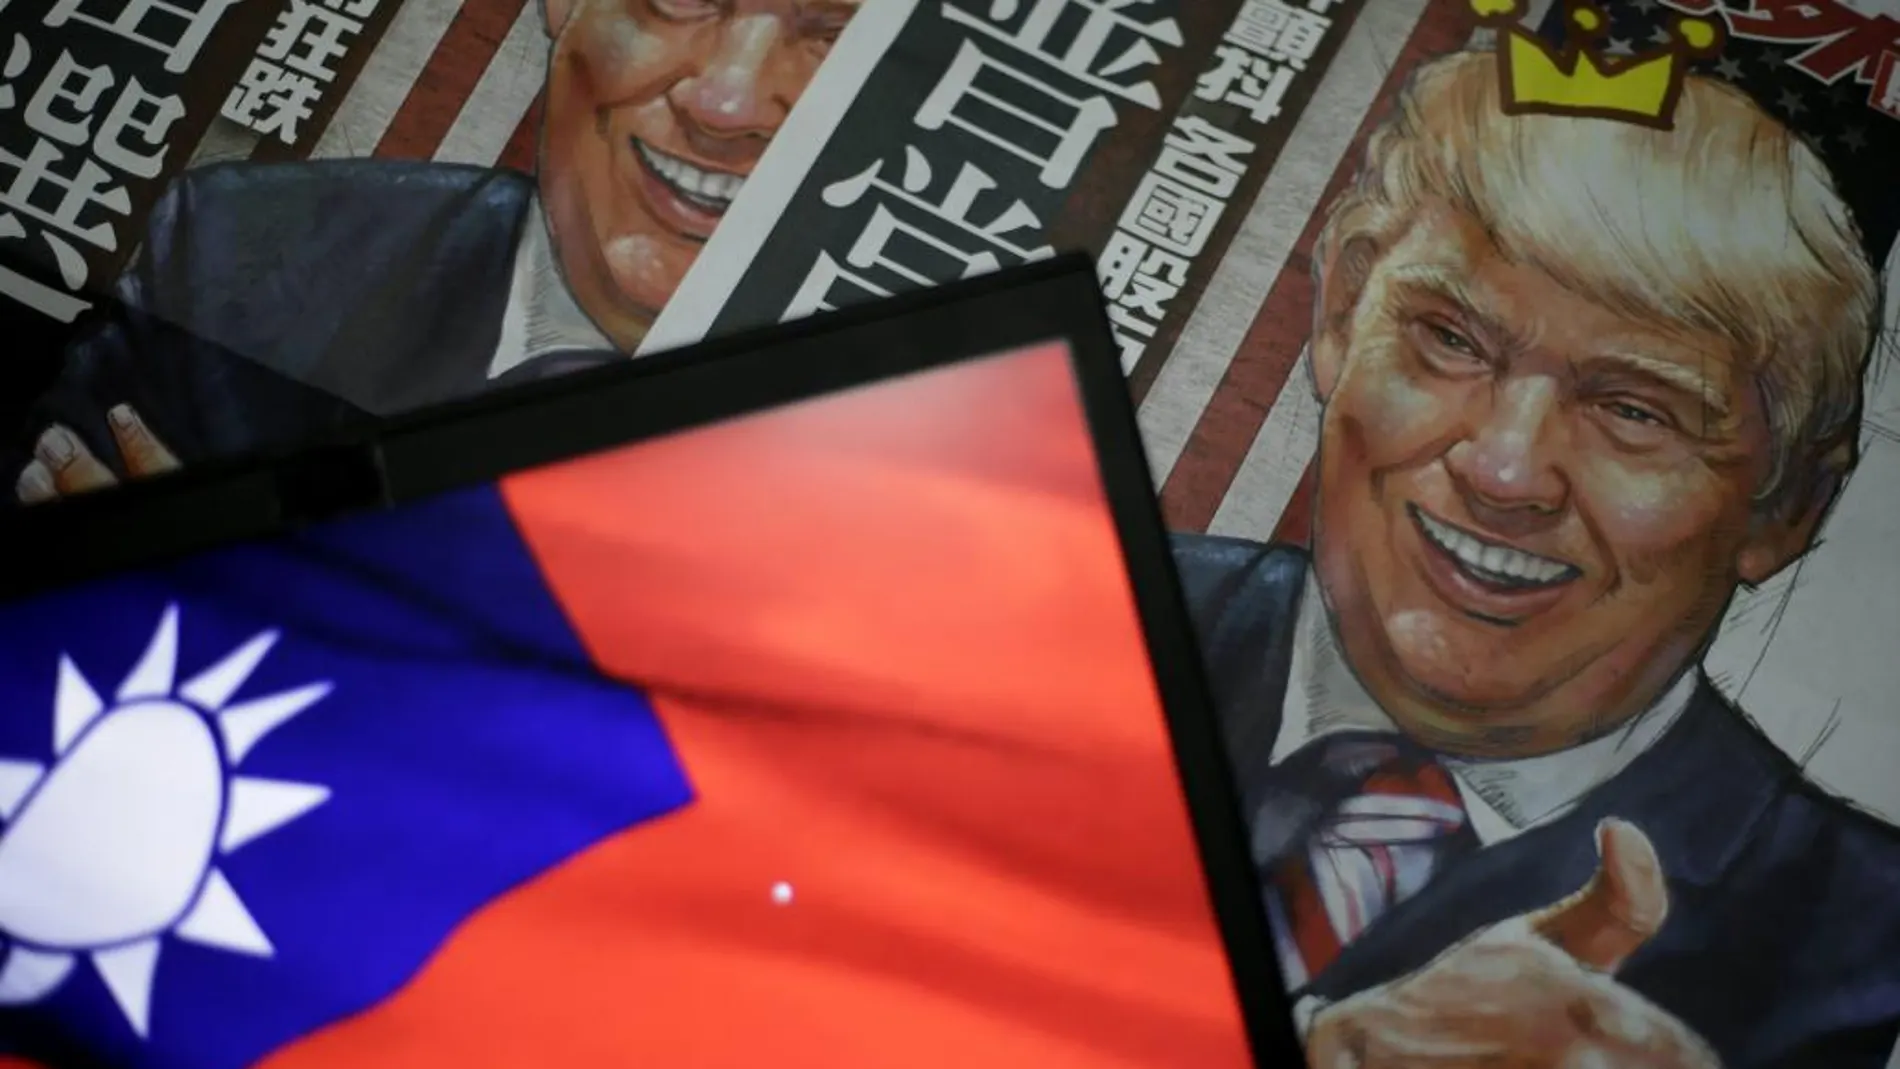 Una ilustración del presidente electo estadounidense Donald Trump en la portada de un periódico junto a la bandera taiwanesa en Taipei.